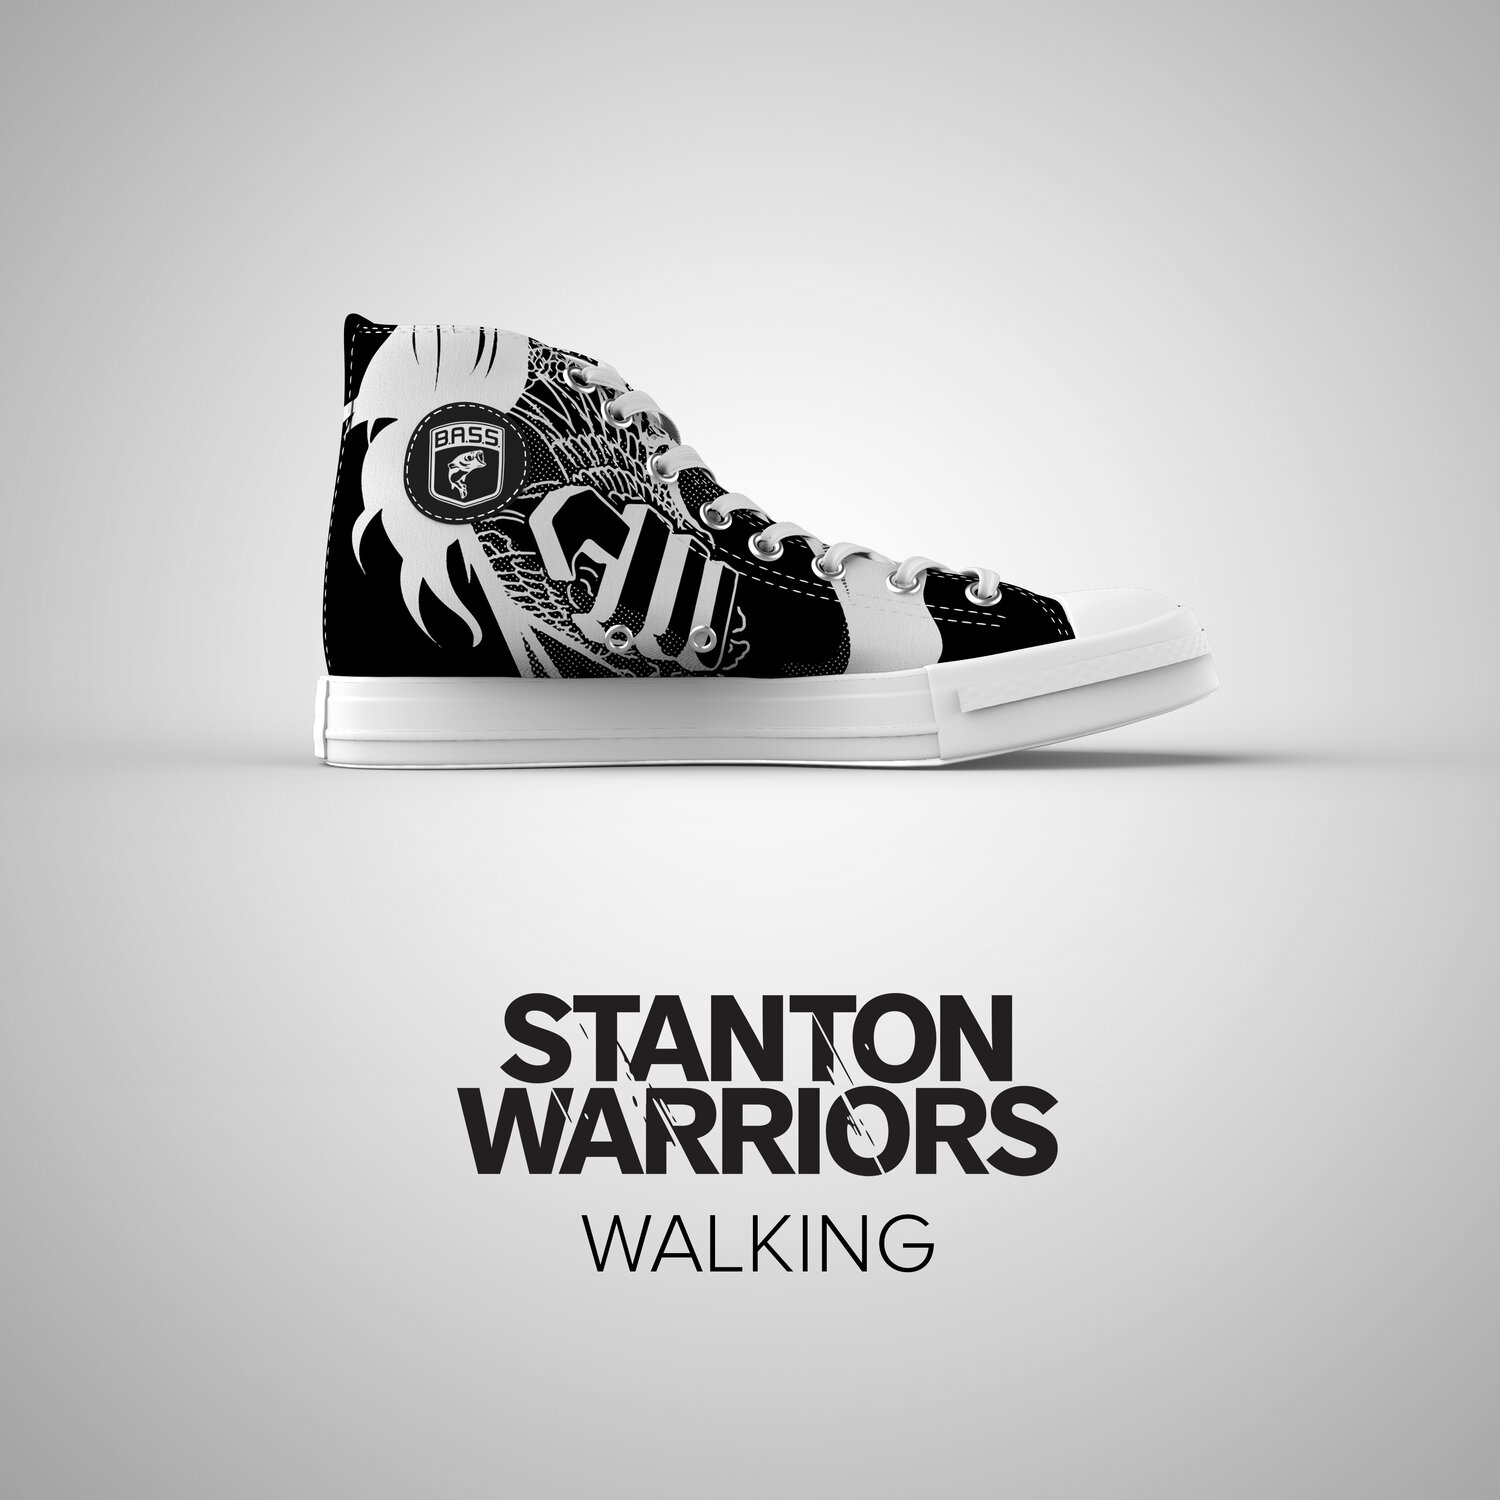 Stanton warriors. Stanton Warriors, альбомы. Stanton Warriors - Precinct. Stanton Warrior фото.